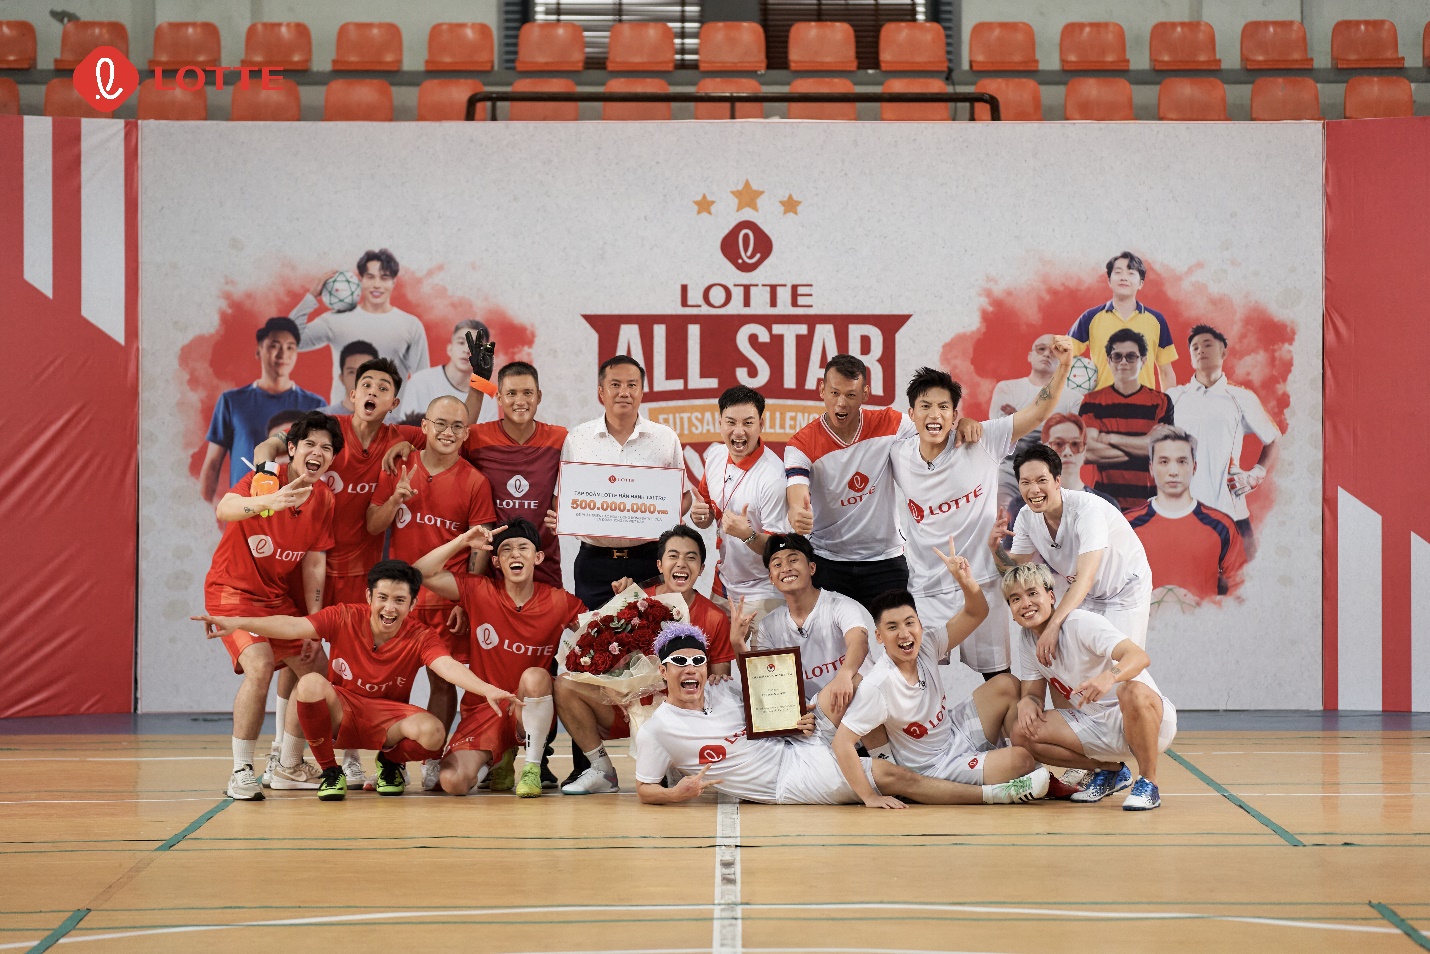 Sau Cầu Thủ Nhí, Tập đoàn LOTTE ra mắt show bóng đá Futsal Allstar Challenge gồm dàn sao xịn - Ảnh 2.